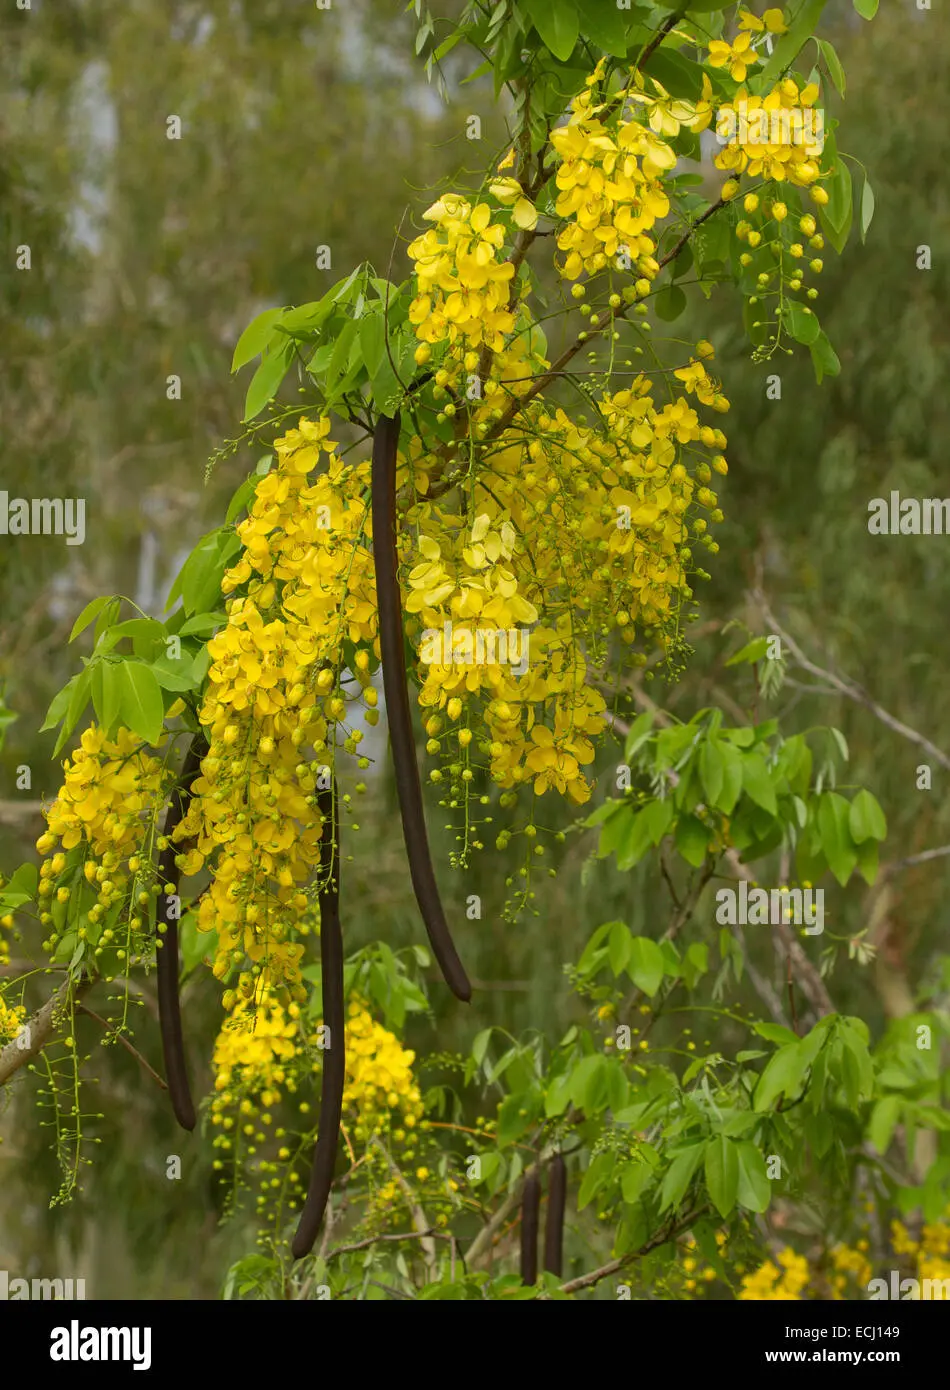 arbol de flores amarillas y vainas - Cómo es el árbol de lluvia de oro